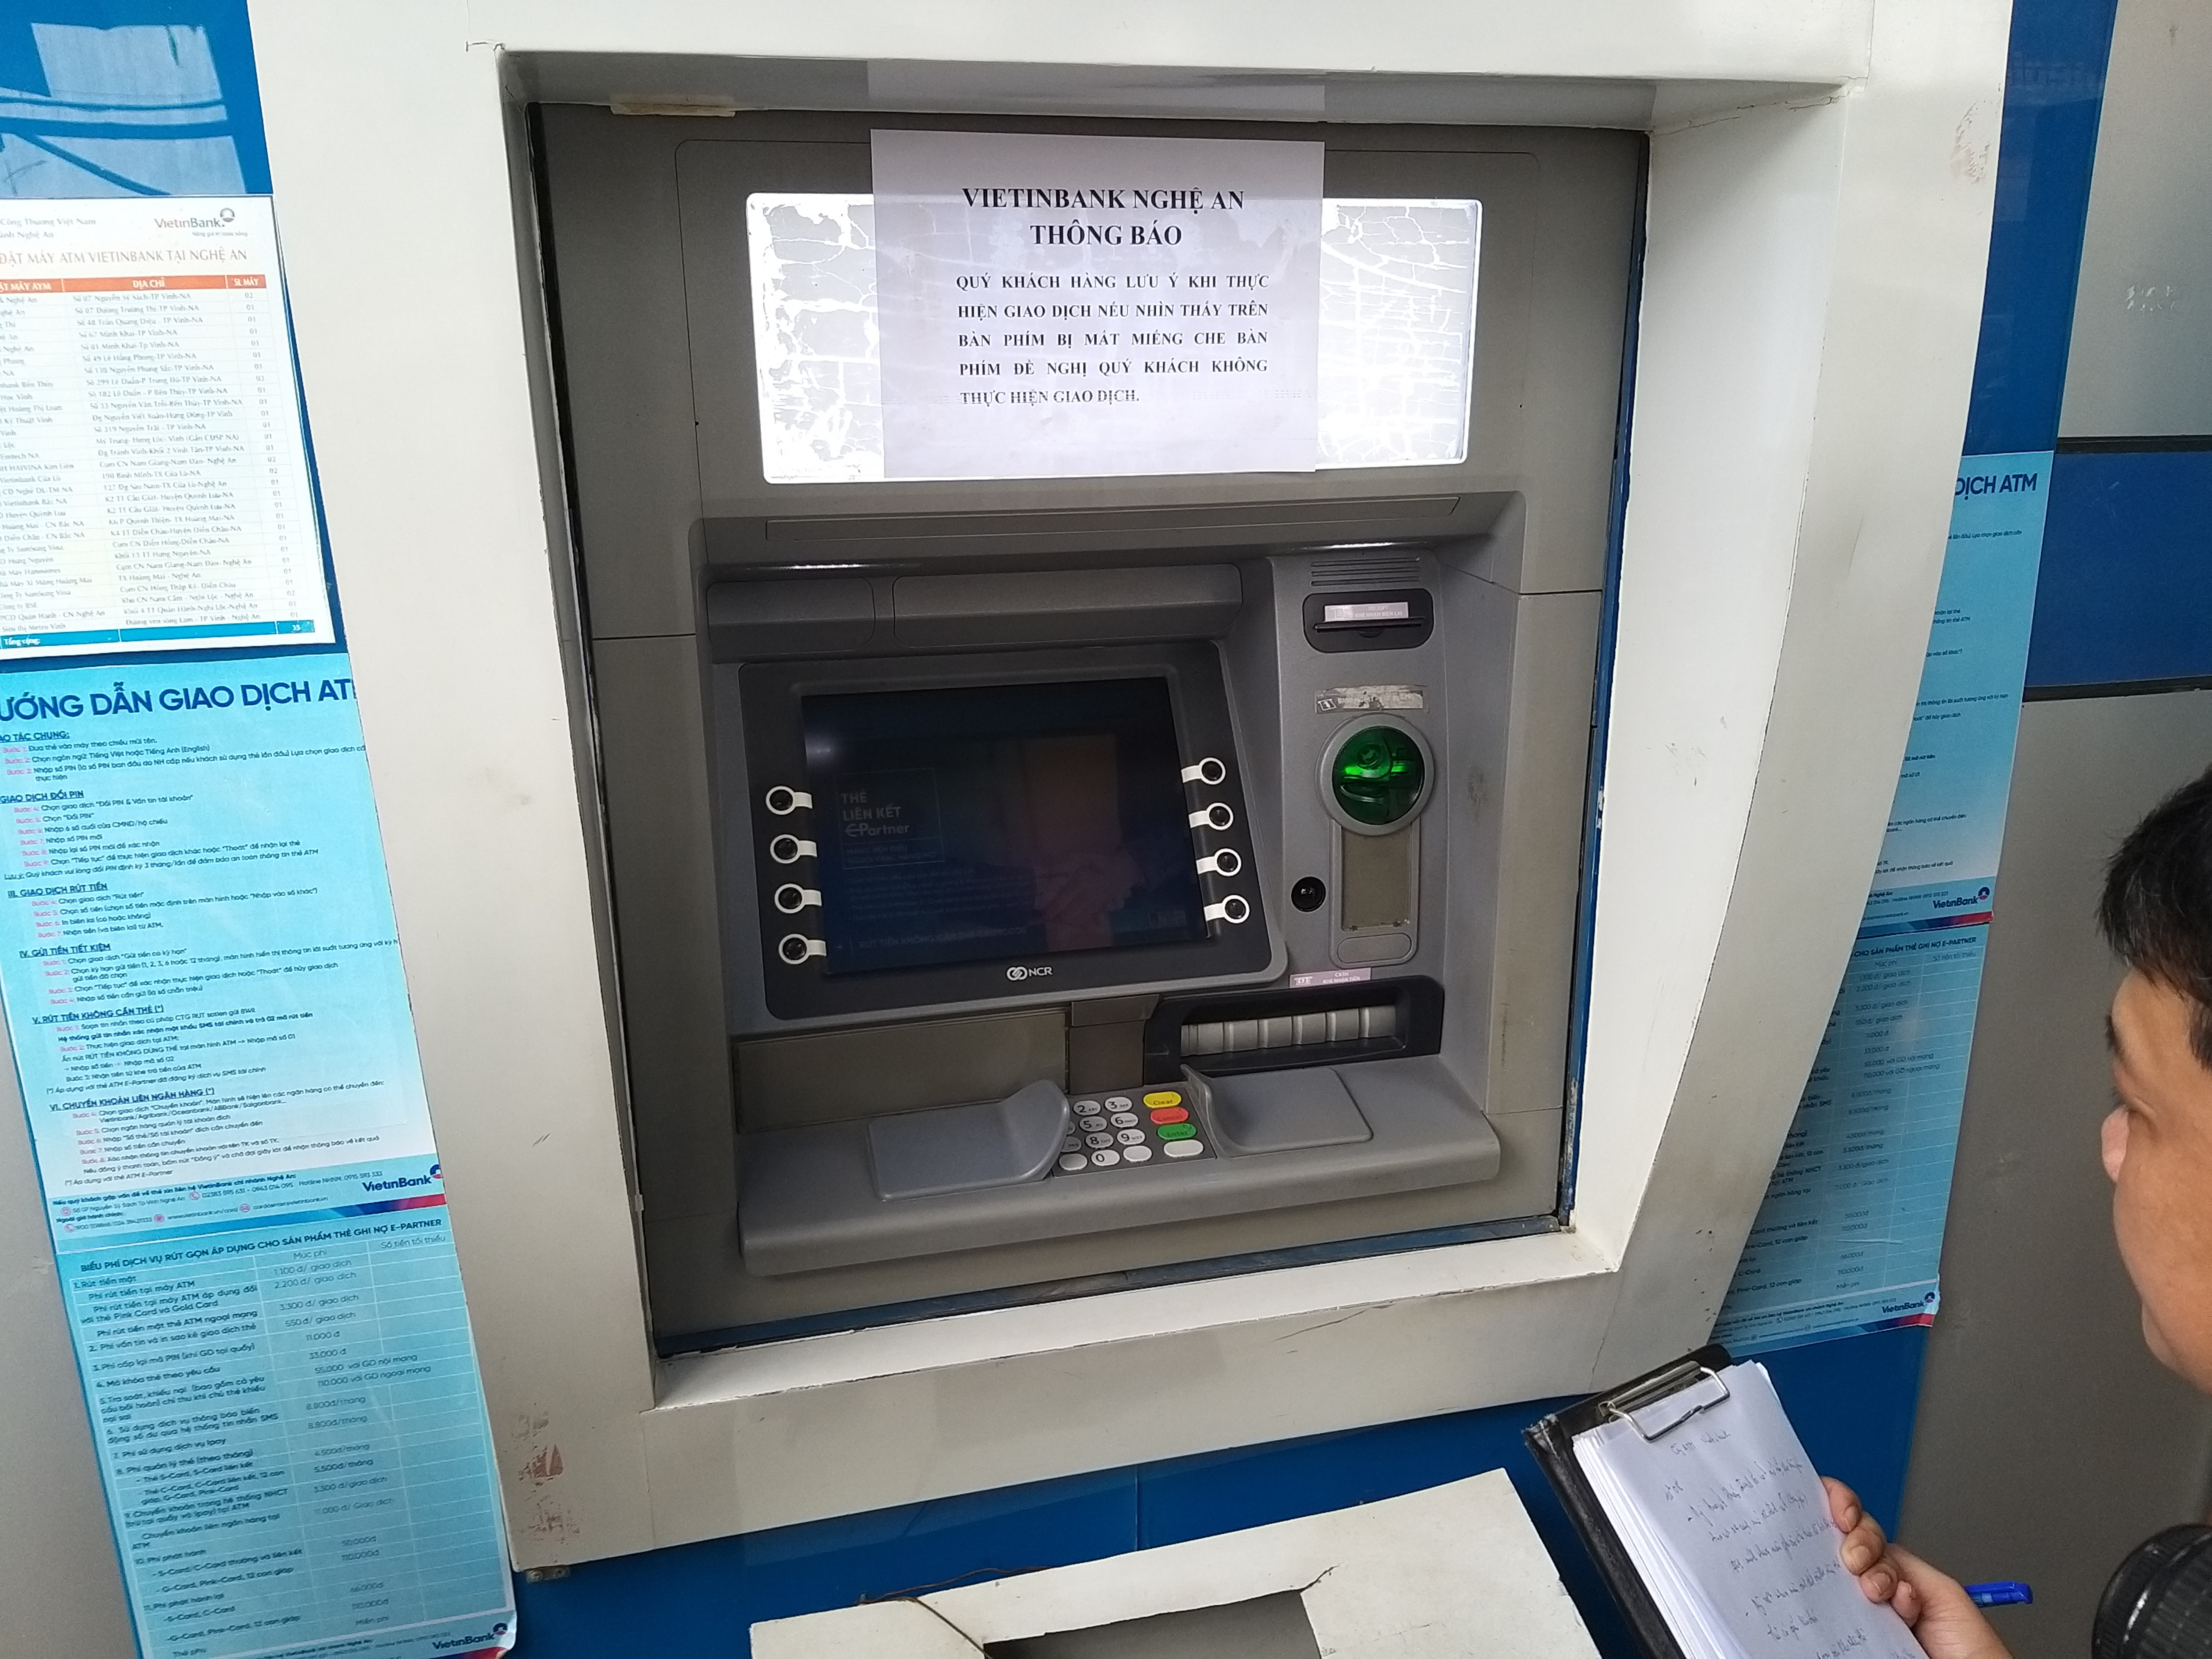 Các đối tượng này chọn các cây ATM có lượng khách giao dịch nhiều để thực hiện hành vi phạm tội. Ảnh: P.B